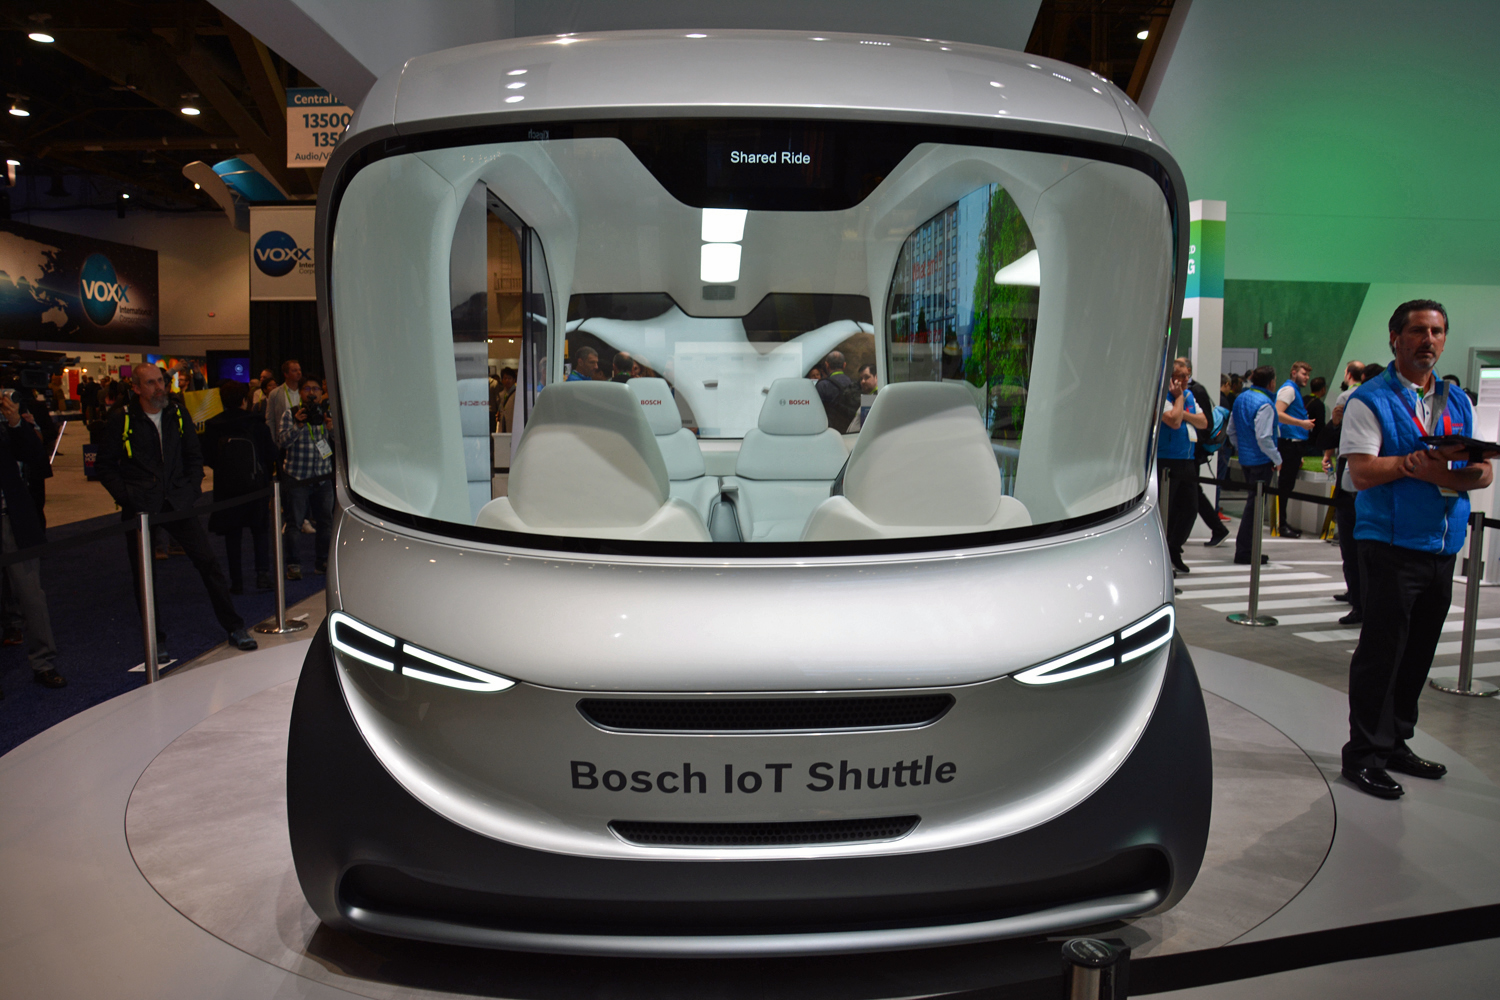 Bosch IOT shuttle